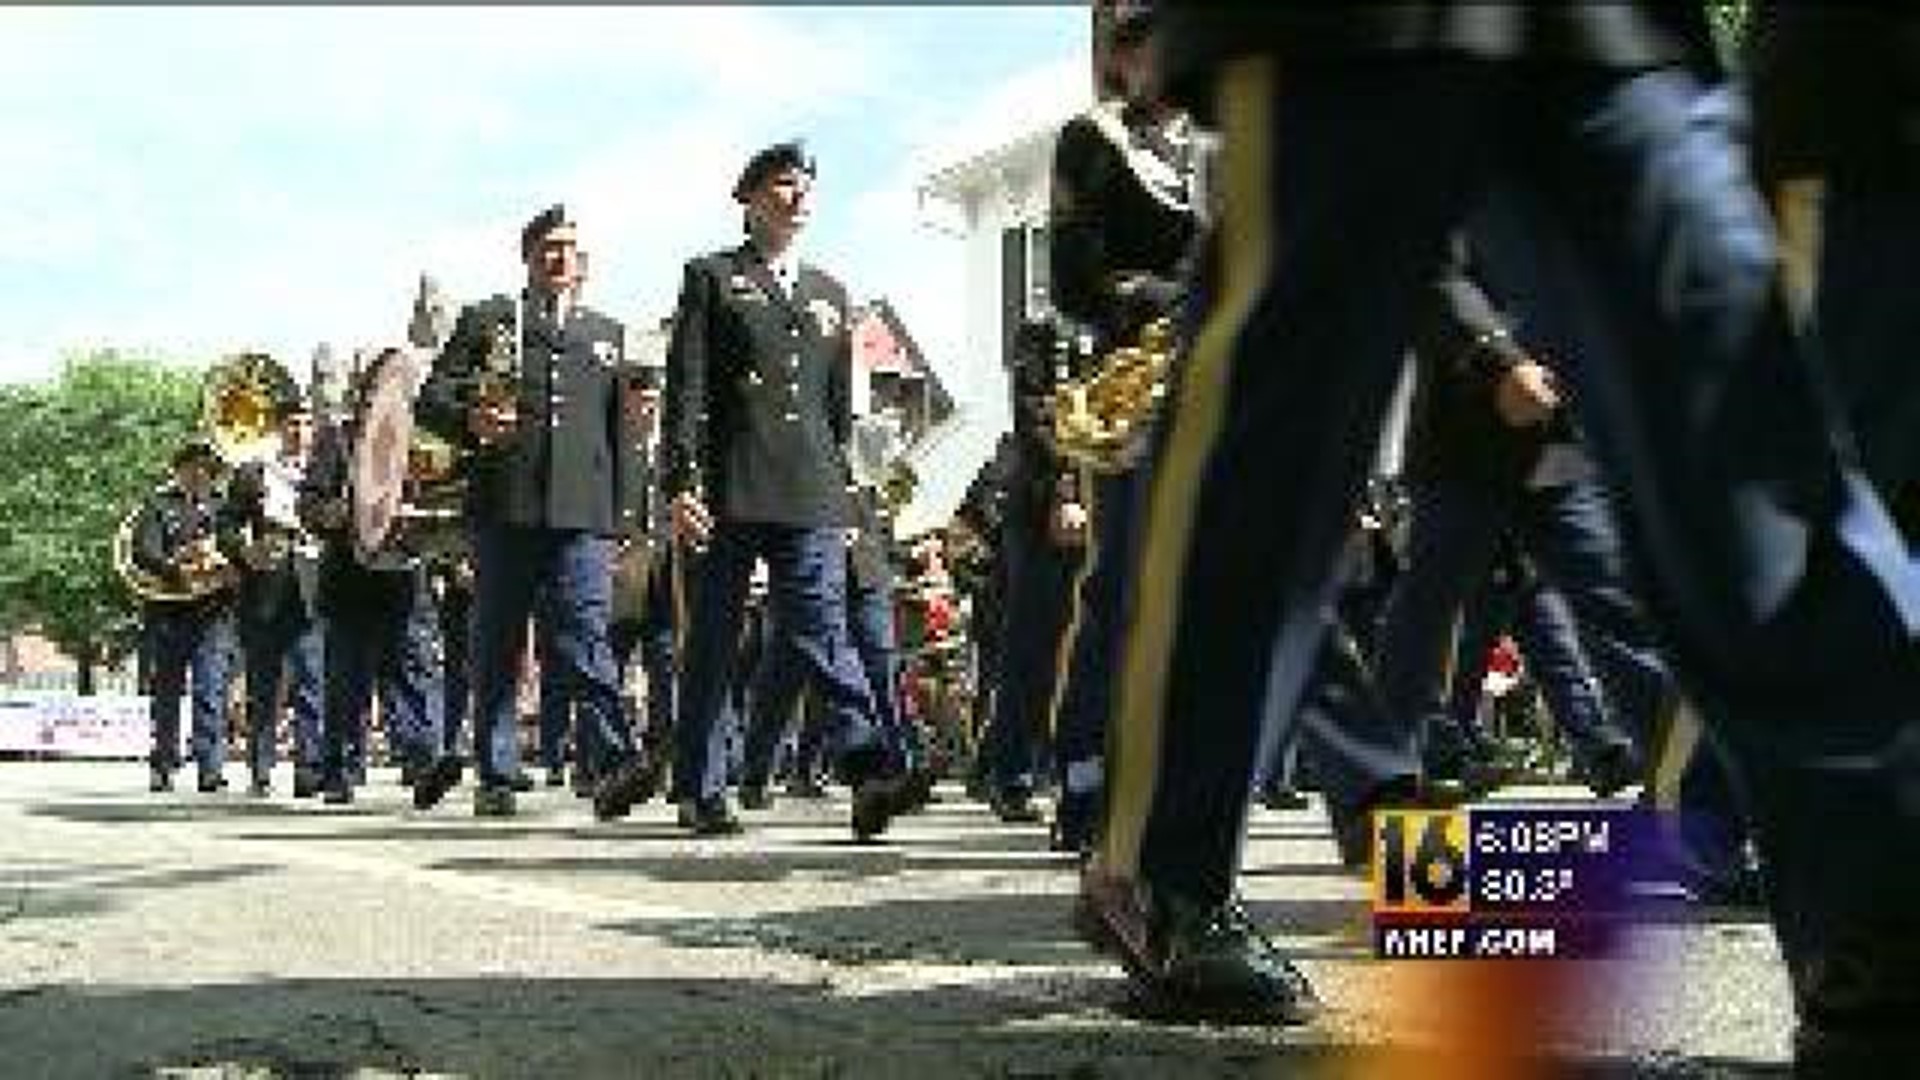 Lewisburg Parade Honors Veterans